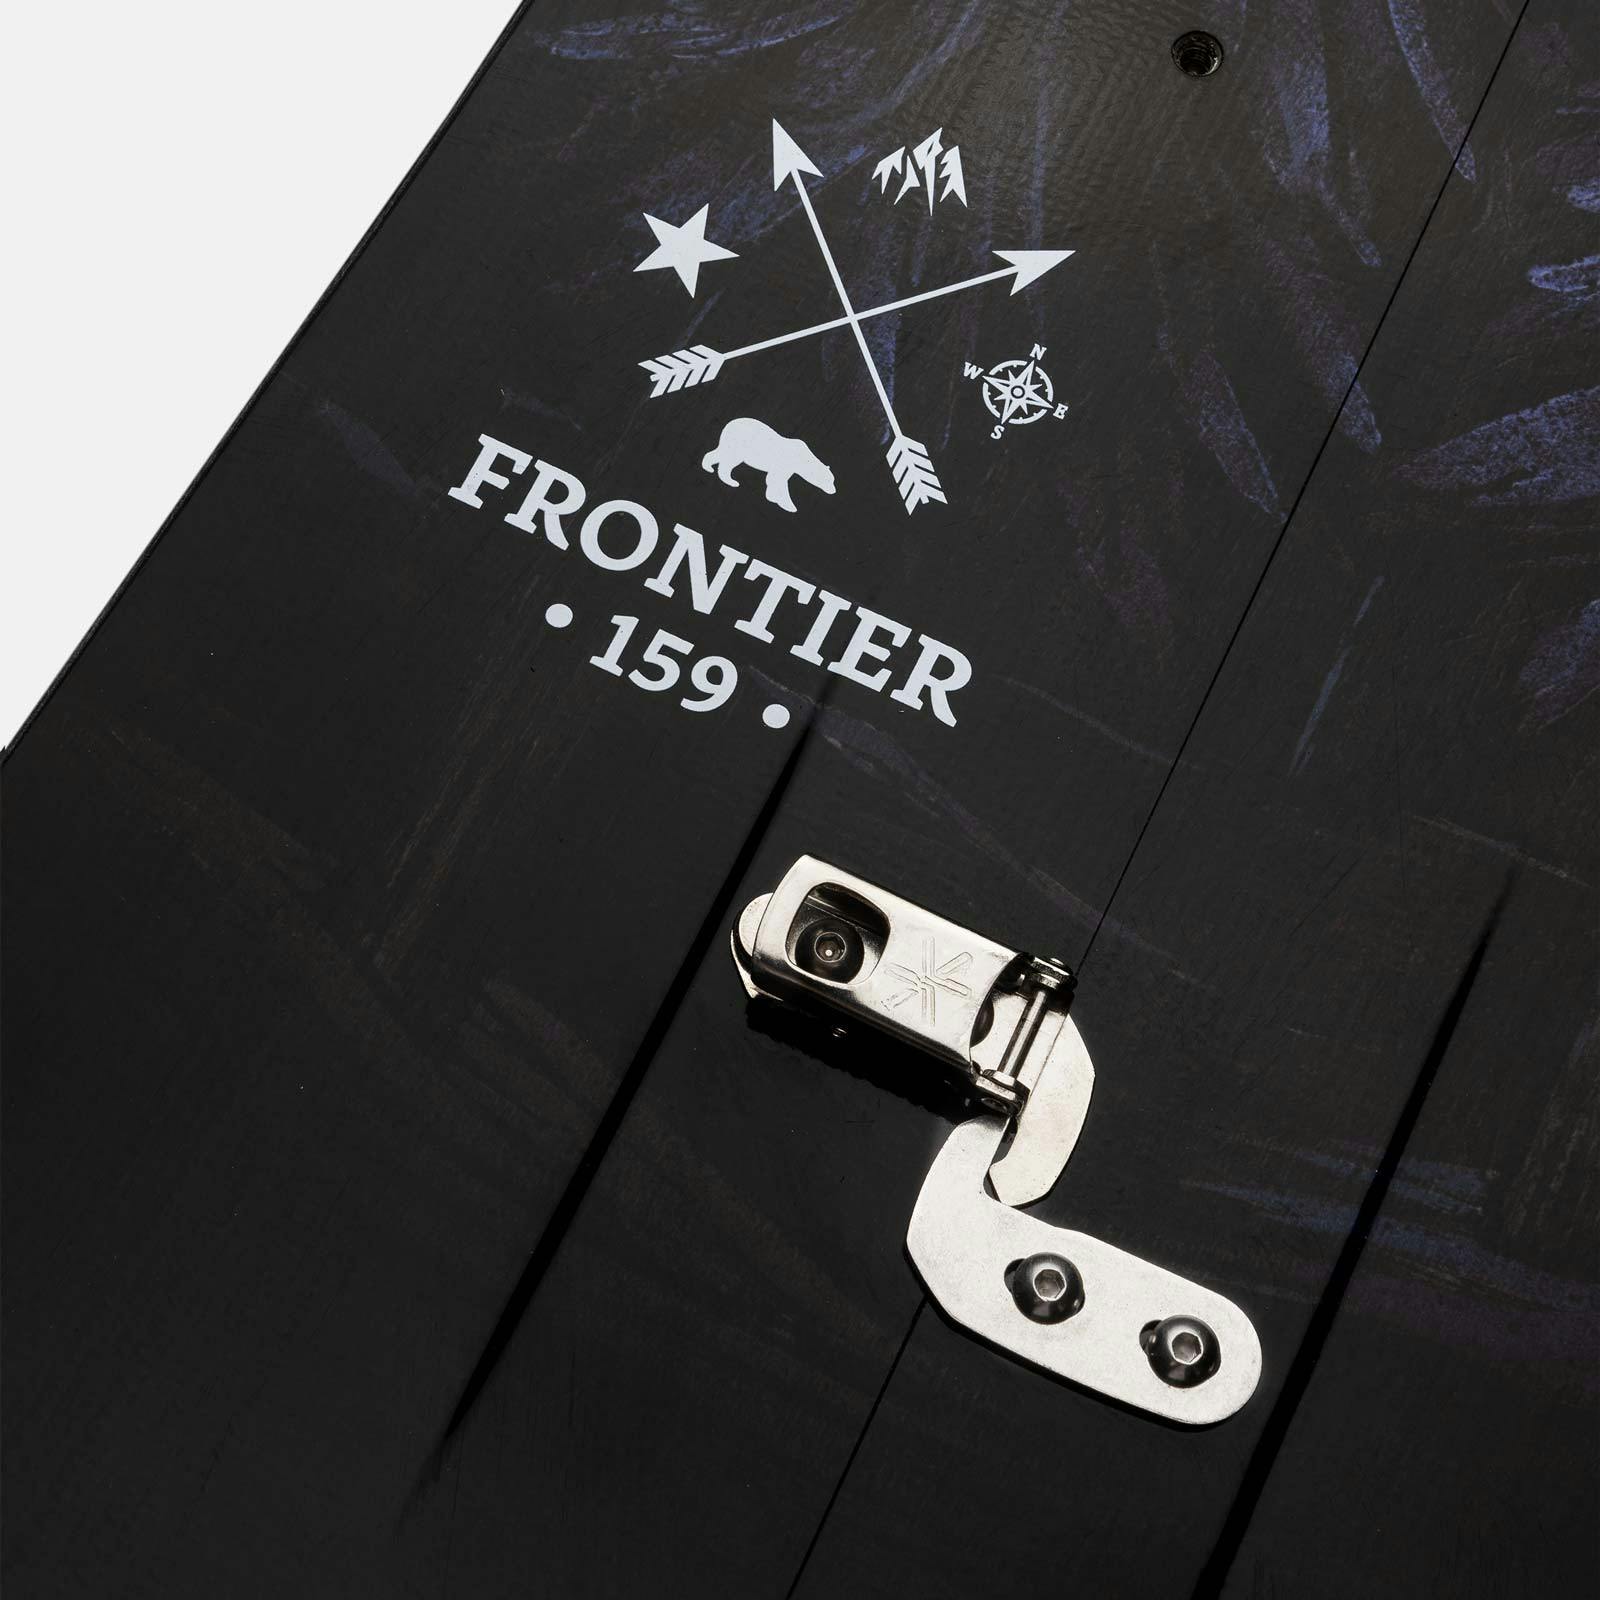 Jones Frontier Splitboard · 2023 · 161W cm